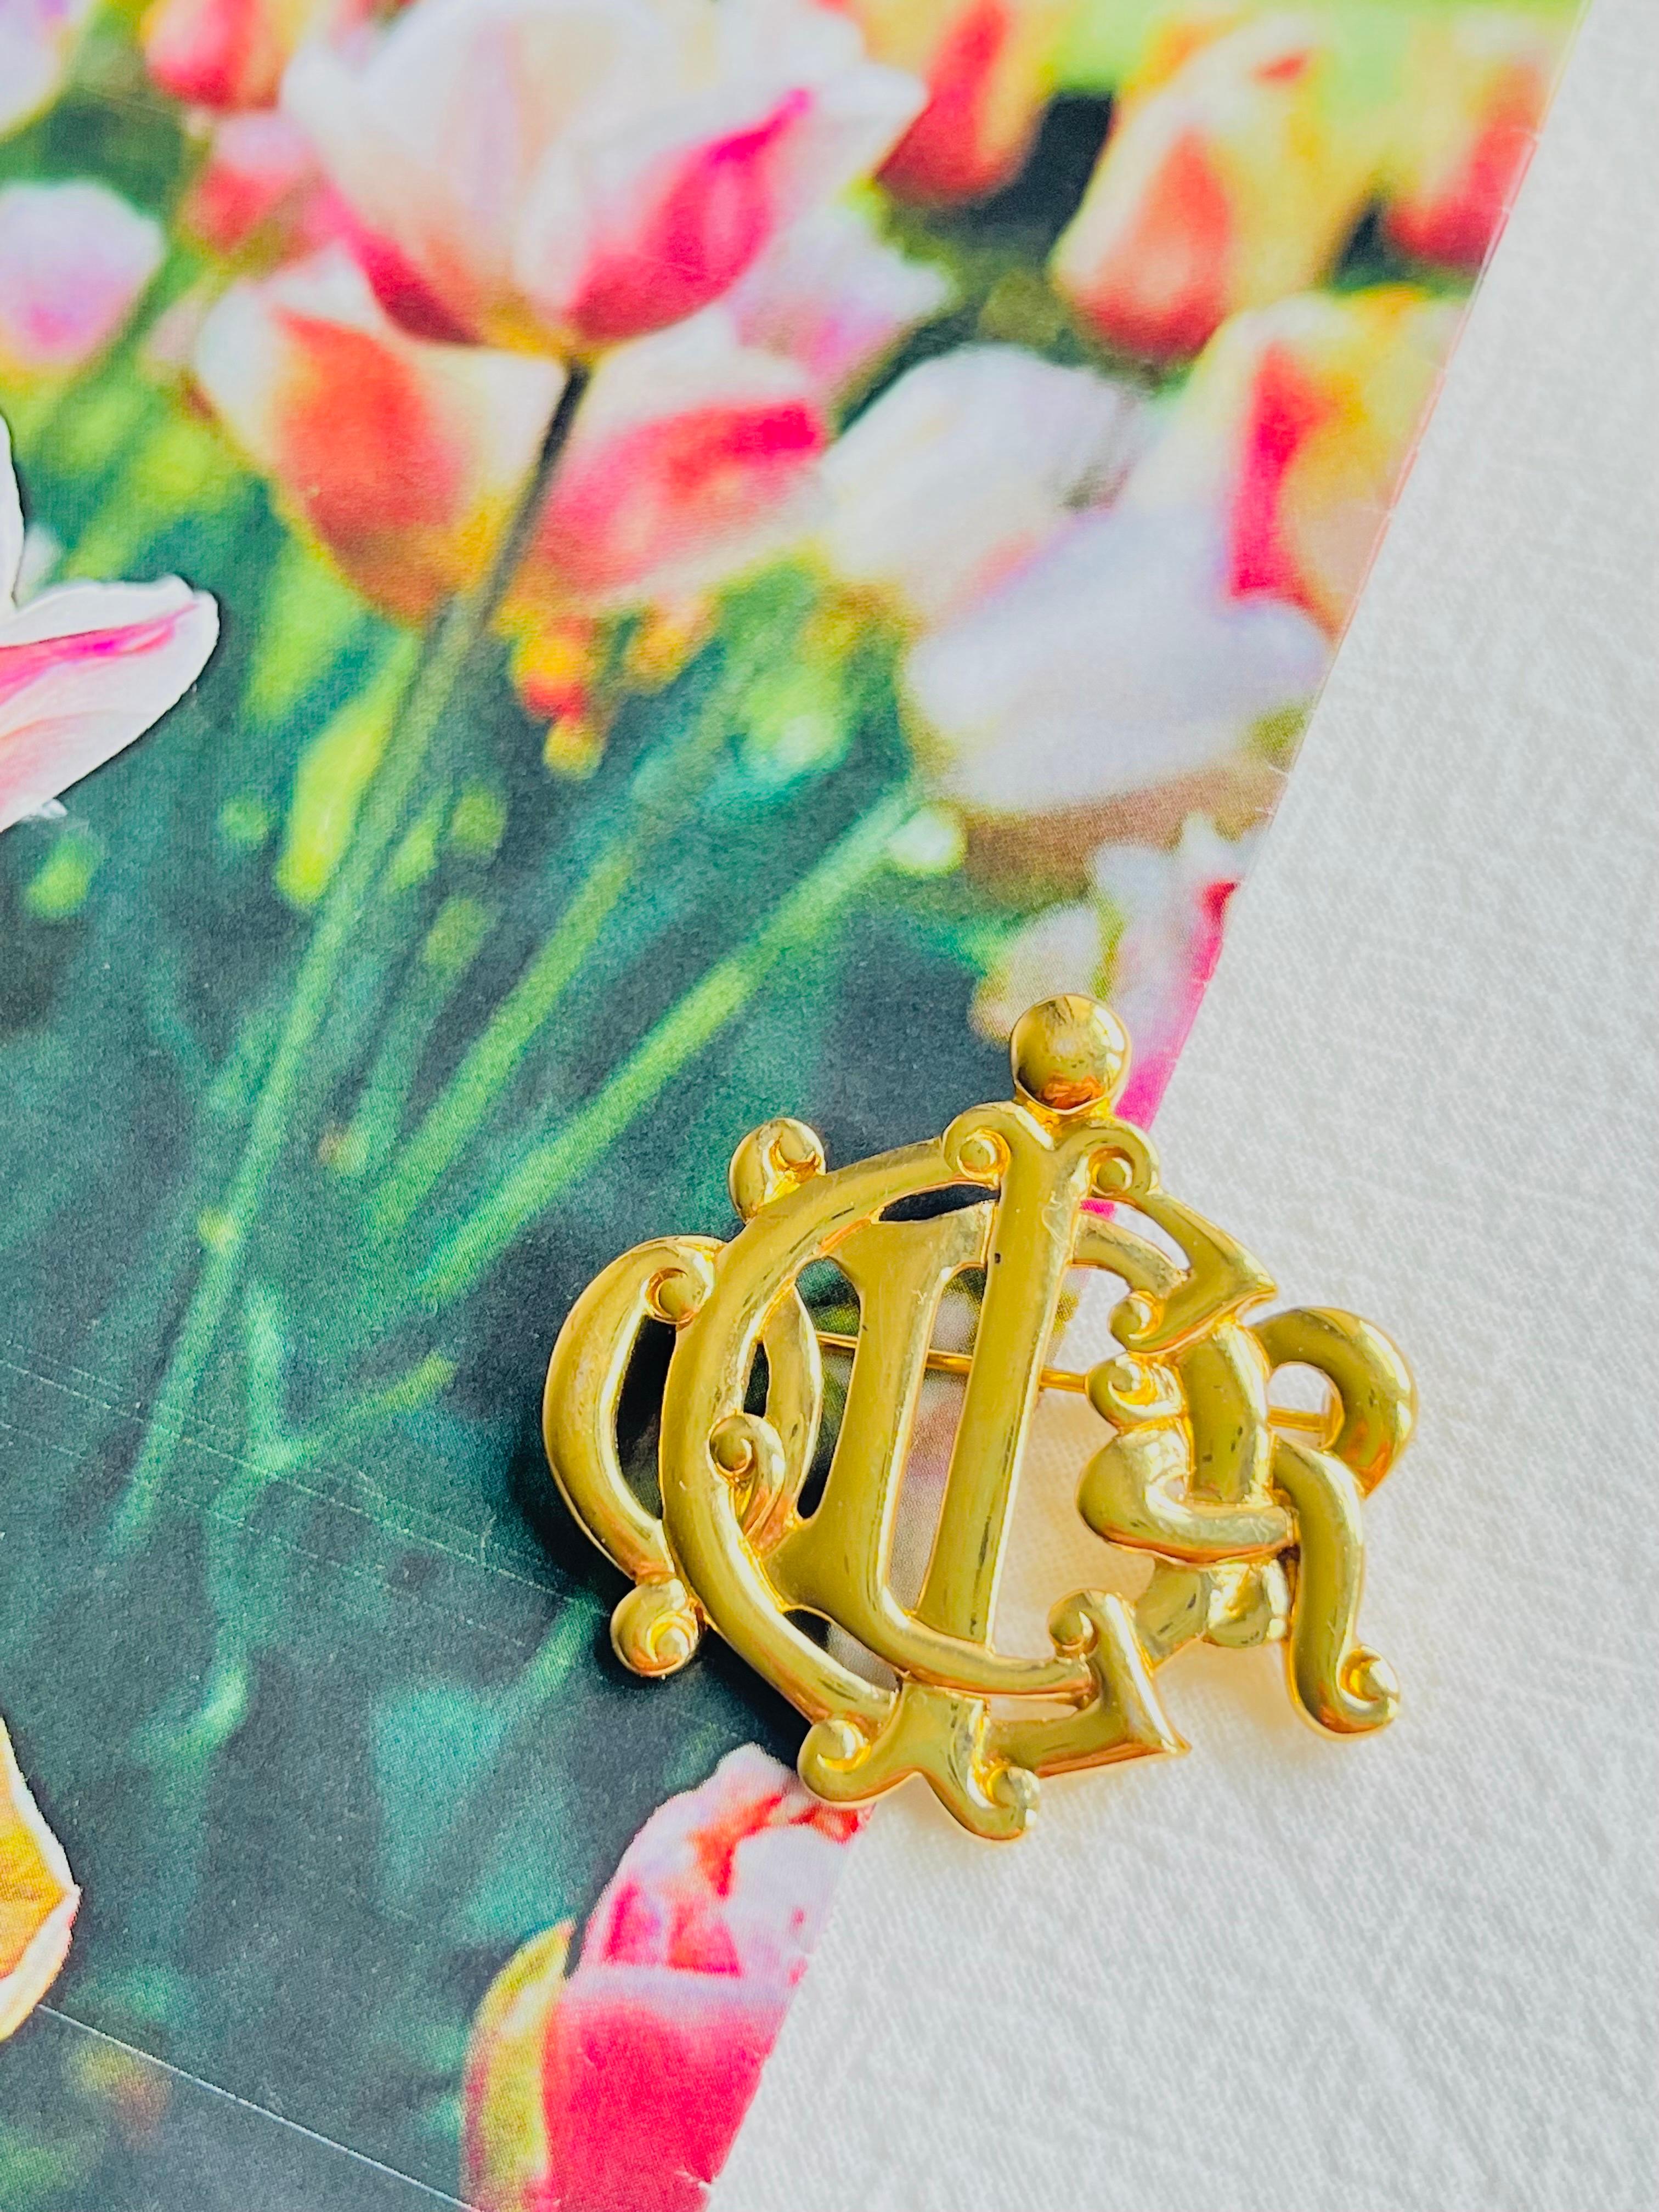 Christian Dior Vintage 1980s Glow Logo Monogram interlocked Letters Brosche, Gold-Ton

Sehr guter Zustand. Leichte Kratzer, kaum spürbar. 100% echt.

Ein Unikat. Diese stilisierte Brosche ist vergoldet.

Größe: 3,8 cm x 3,7 cm.

Gewicht: 9.0 g.

_ _